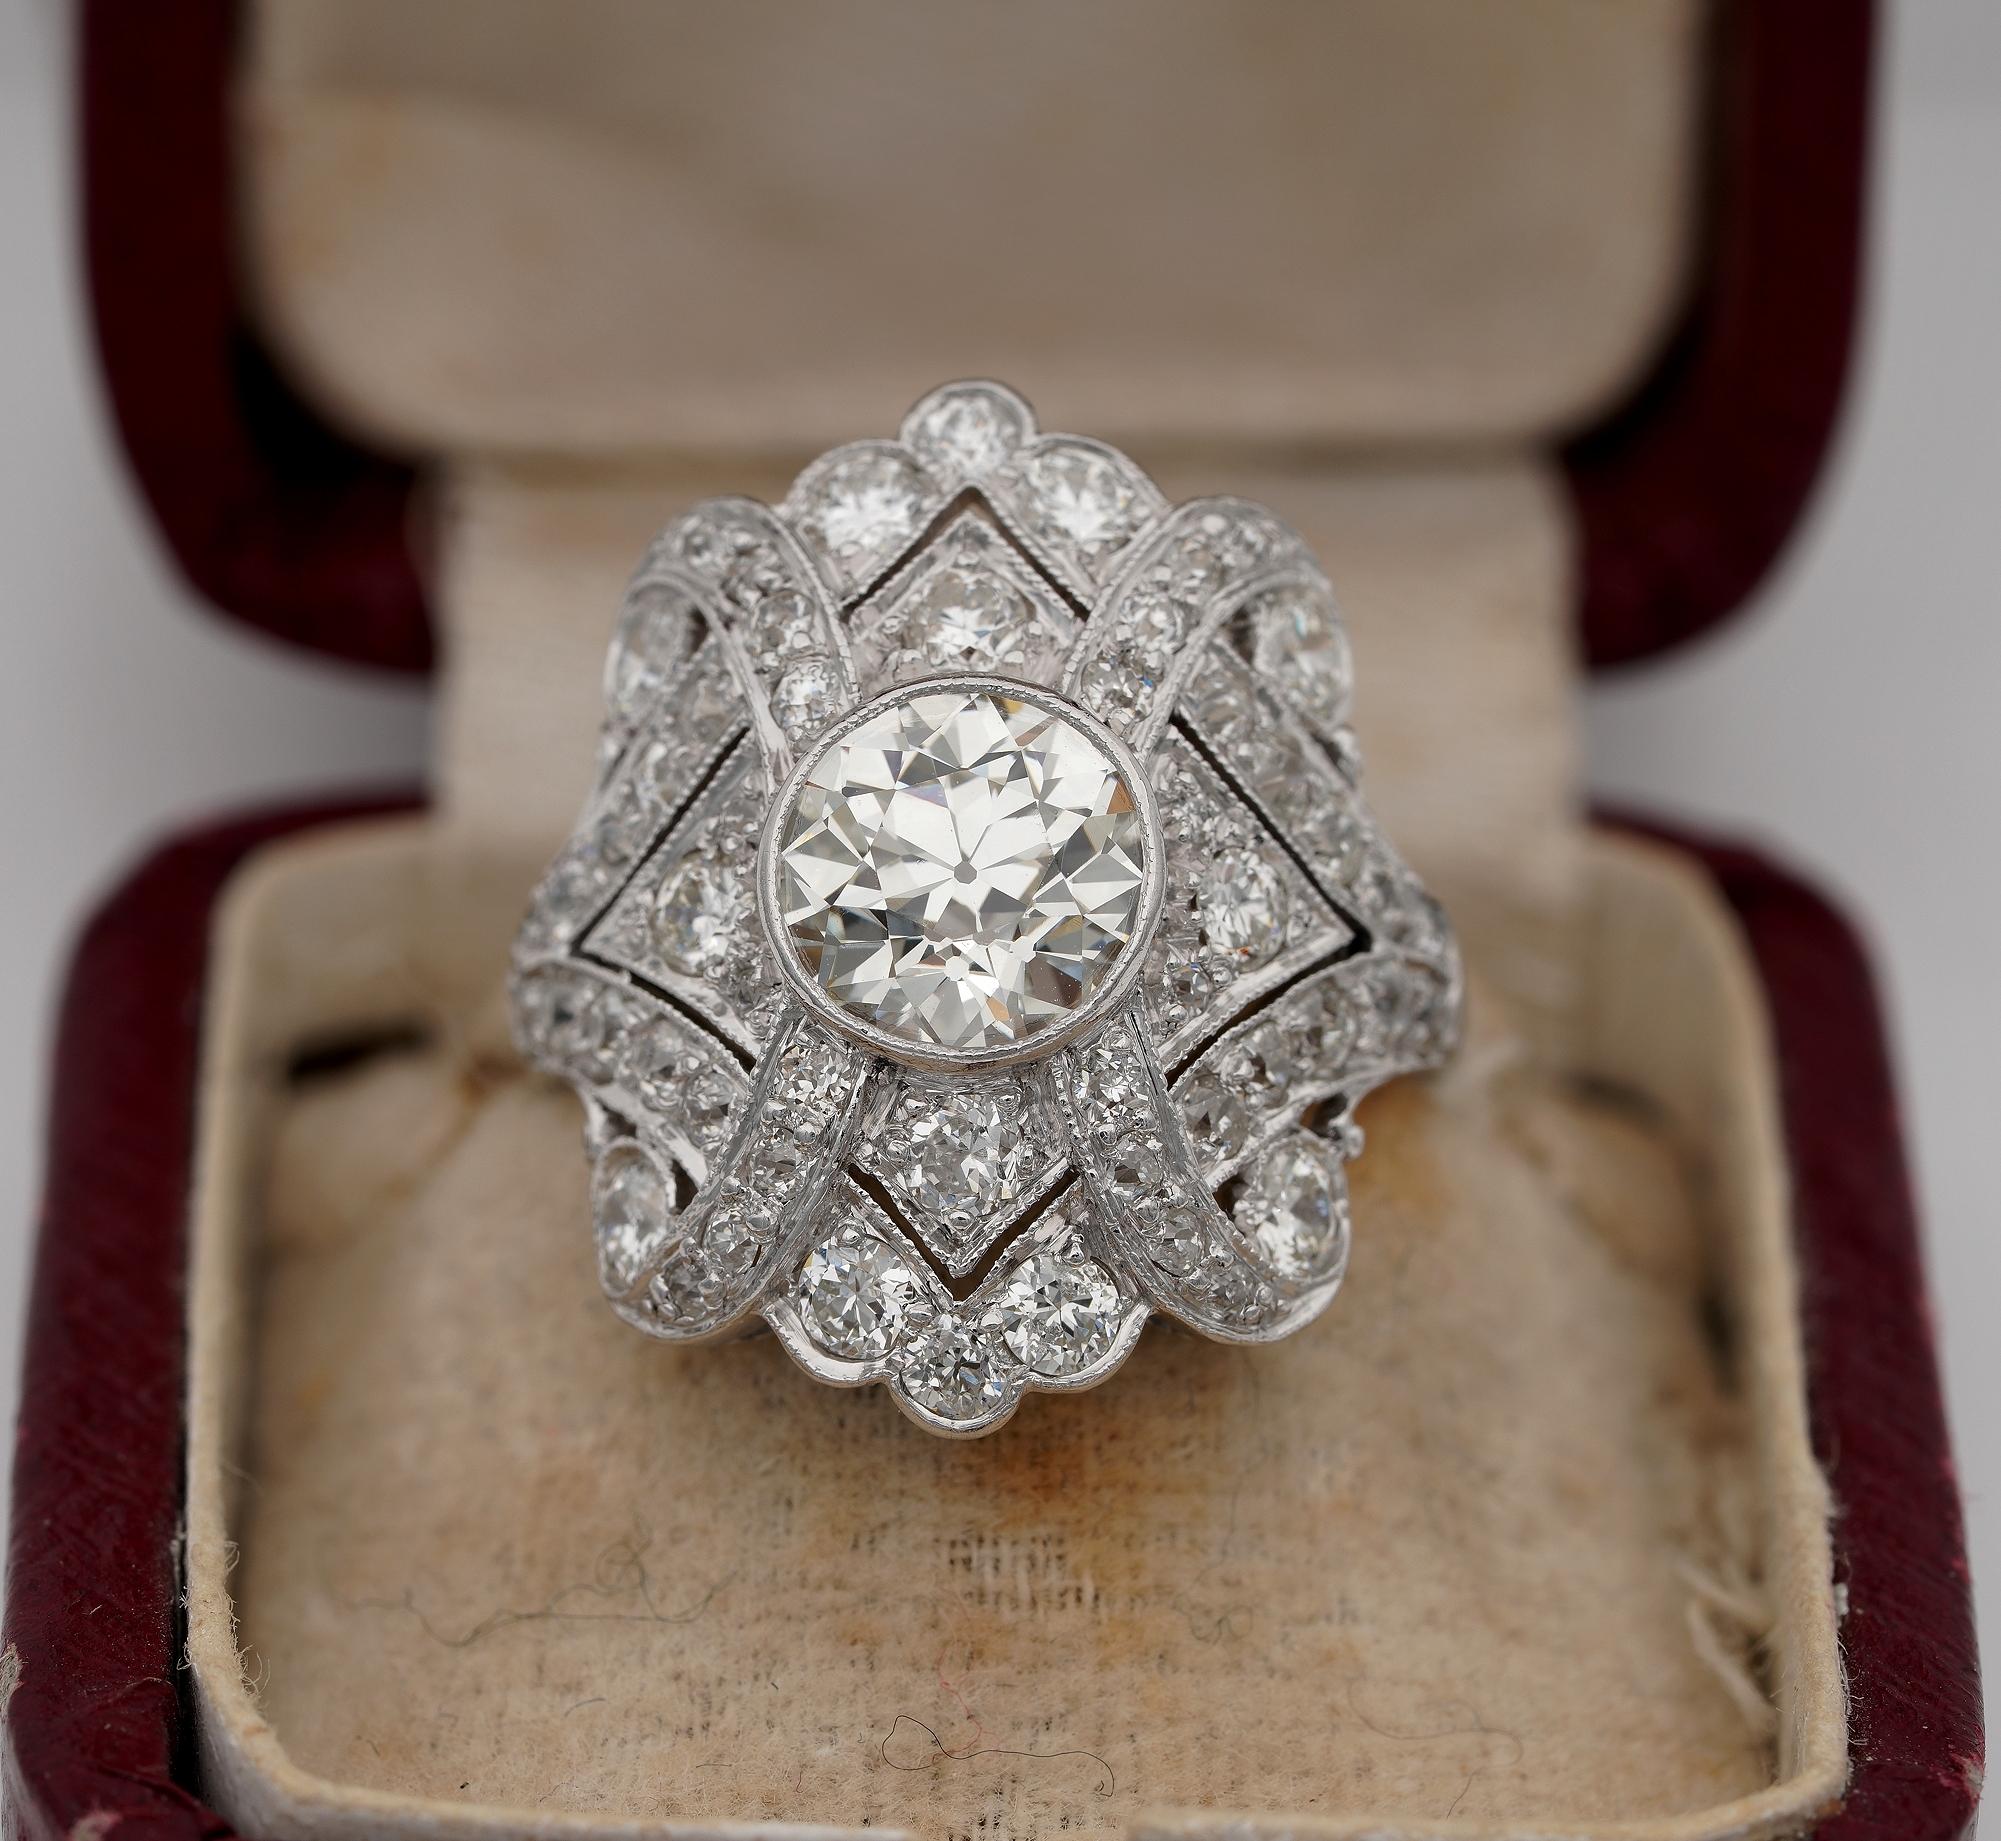 Art Deco Dazzler
Schöne Art Deco Zeitraum Platin gemacht Diamond Plaque Ring
Kunstvoll handgefertigt als Unikat aus den 1920er Jahren in einem schillernden Plakettendesign, das die Opulenz von Diamanten zeigt.
Der zentrale Diamant ist ein alter